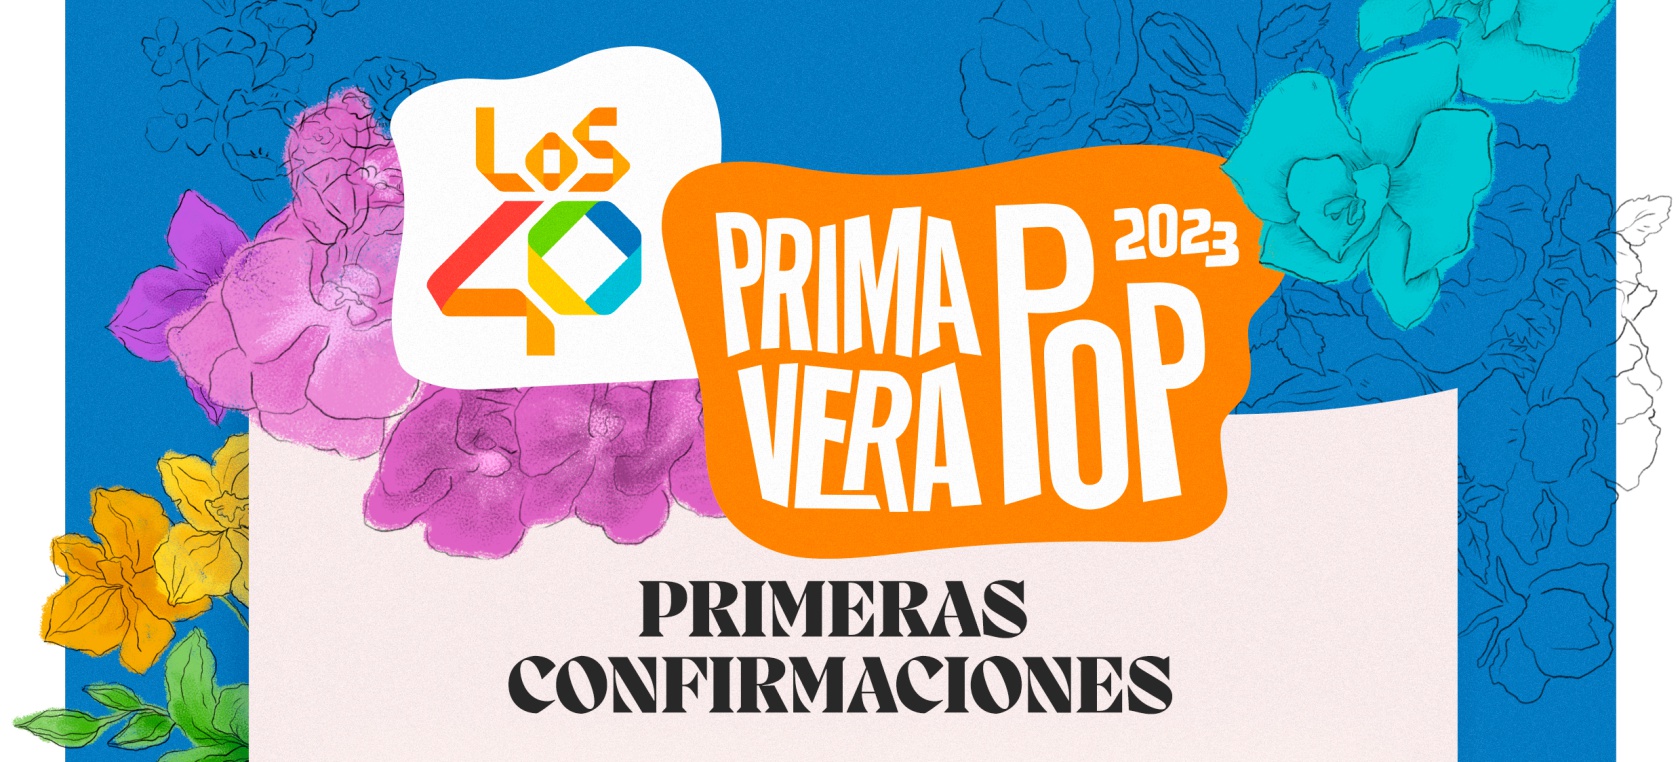 LOS40 Primavera Pop 2023, rumbo a Rubí (Barcelona): estos son los primeros confirmados del cartel